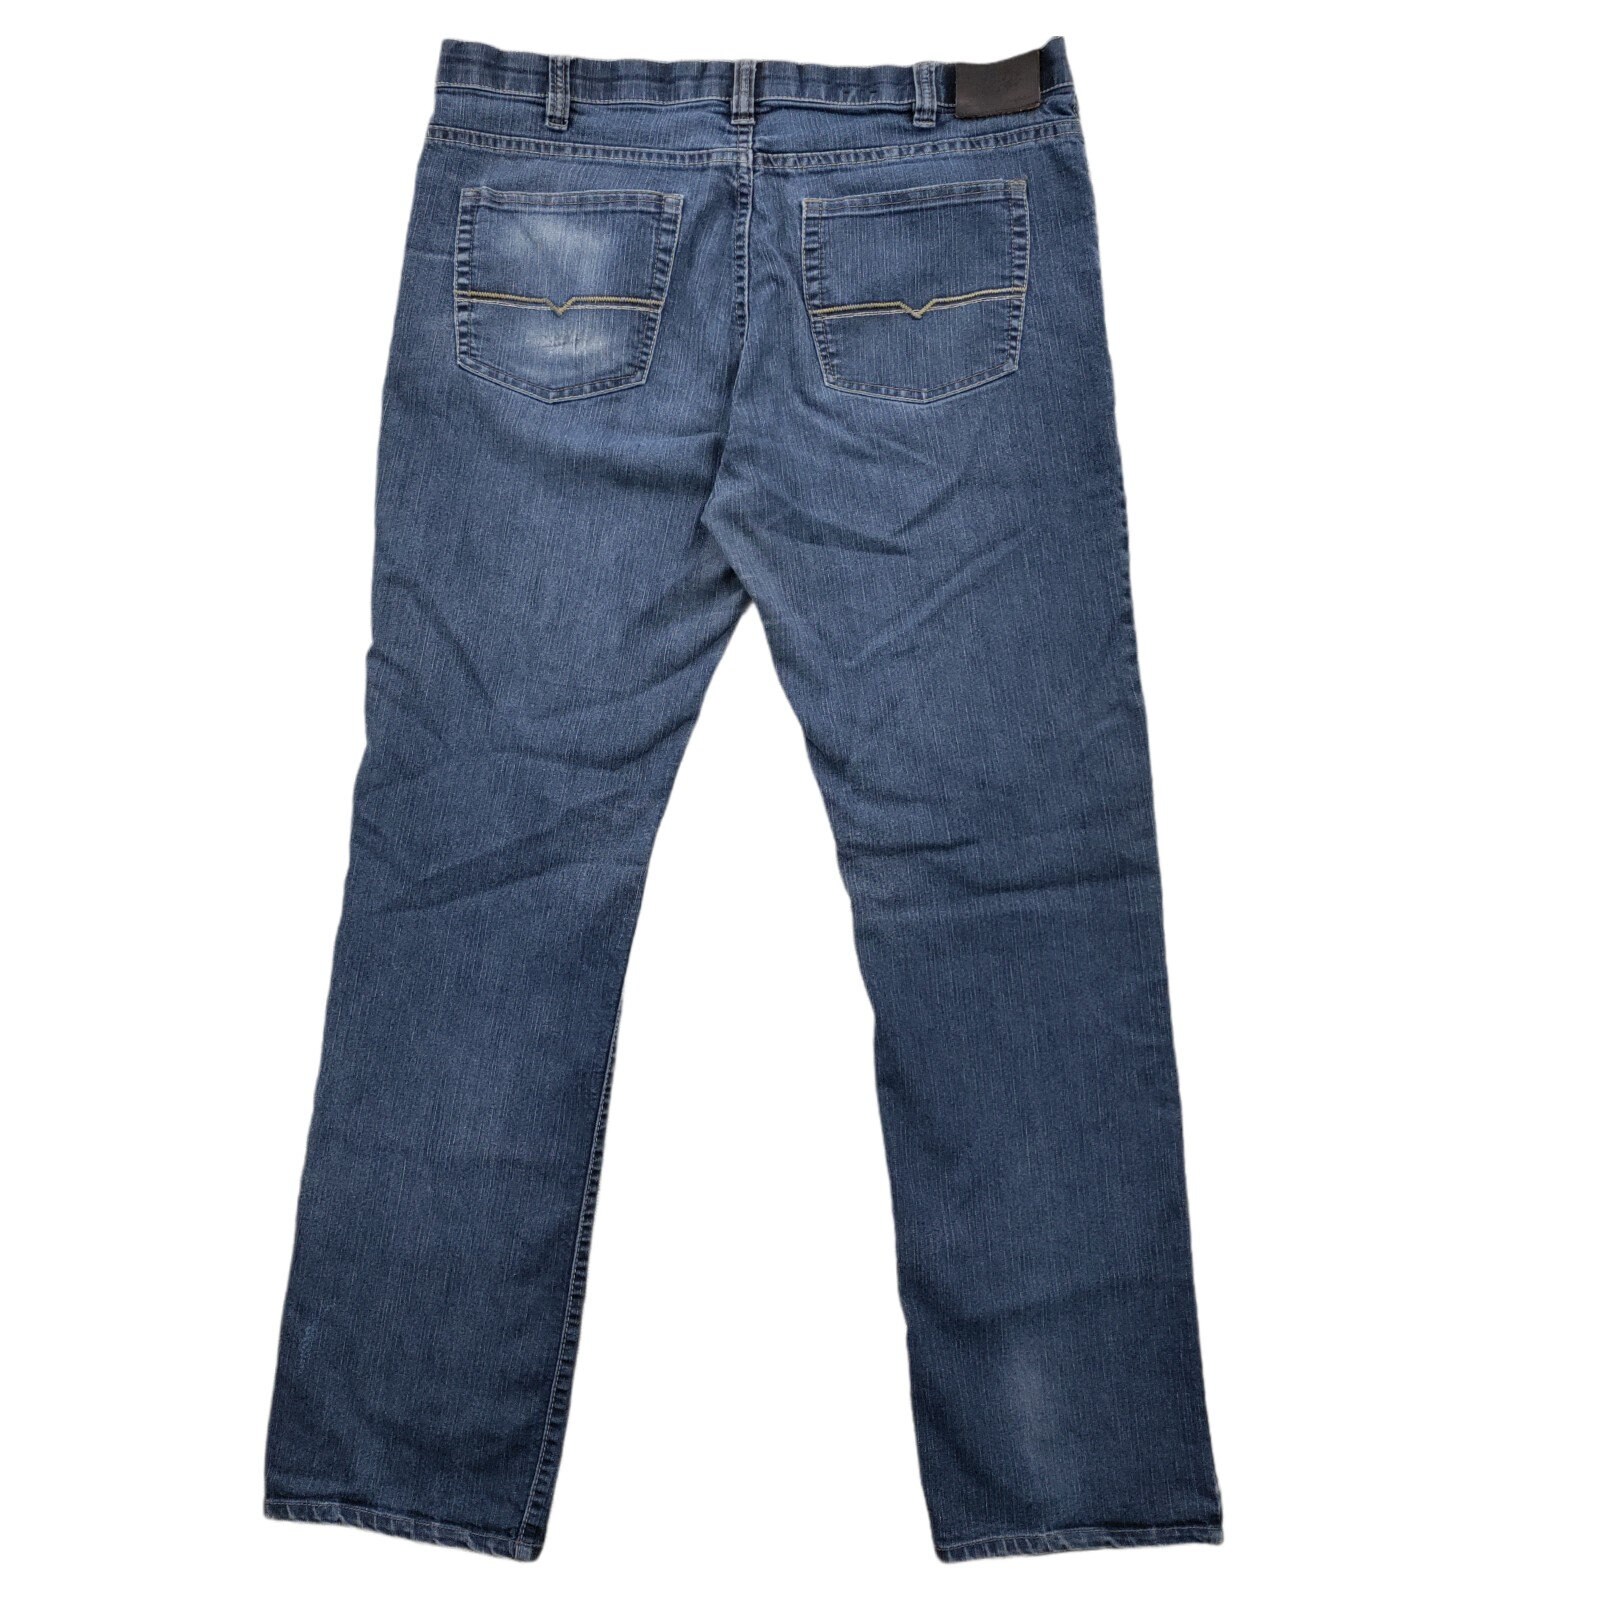 Lois Jeans Men Size 38 Jeans Medium Wash Blue Extensible | Etsy